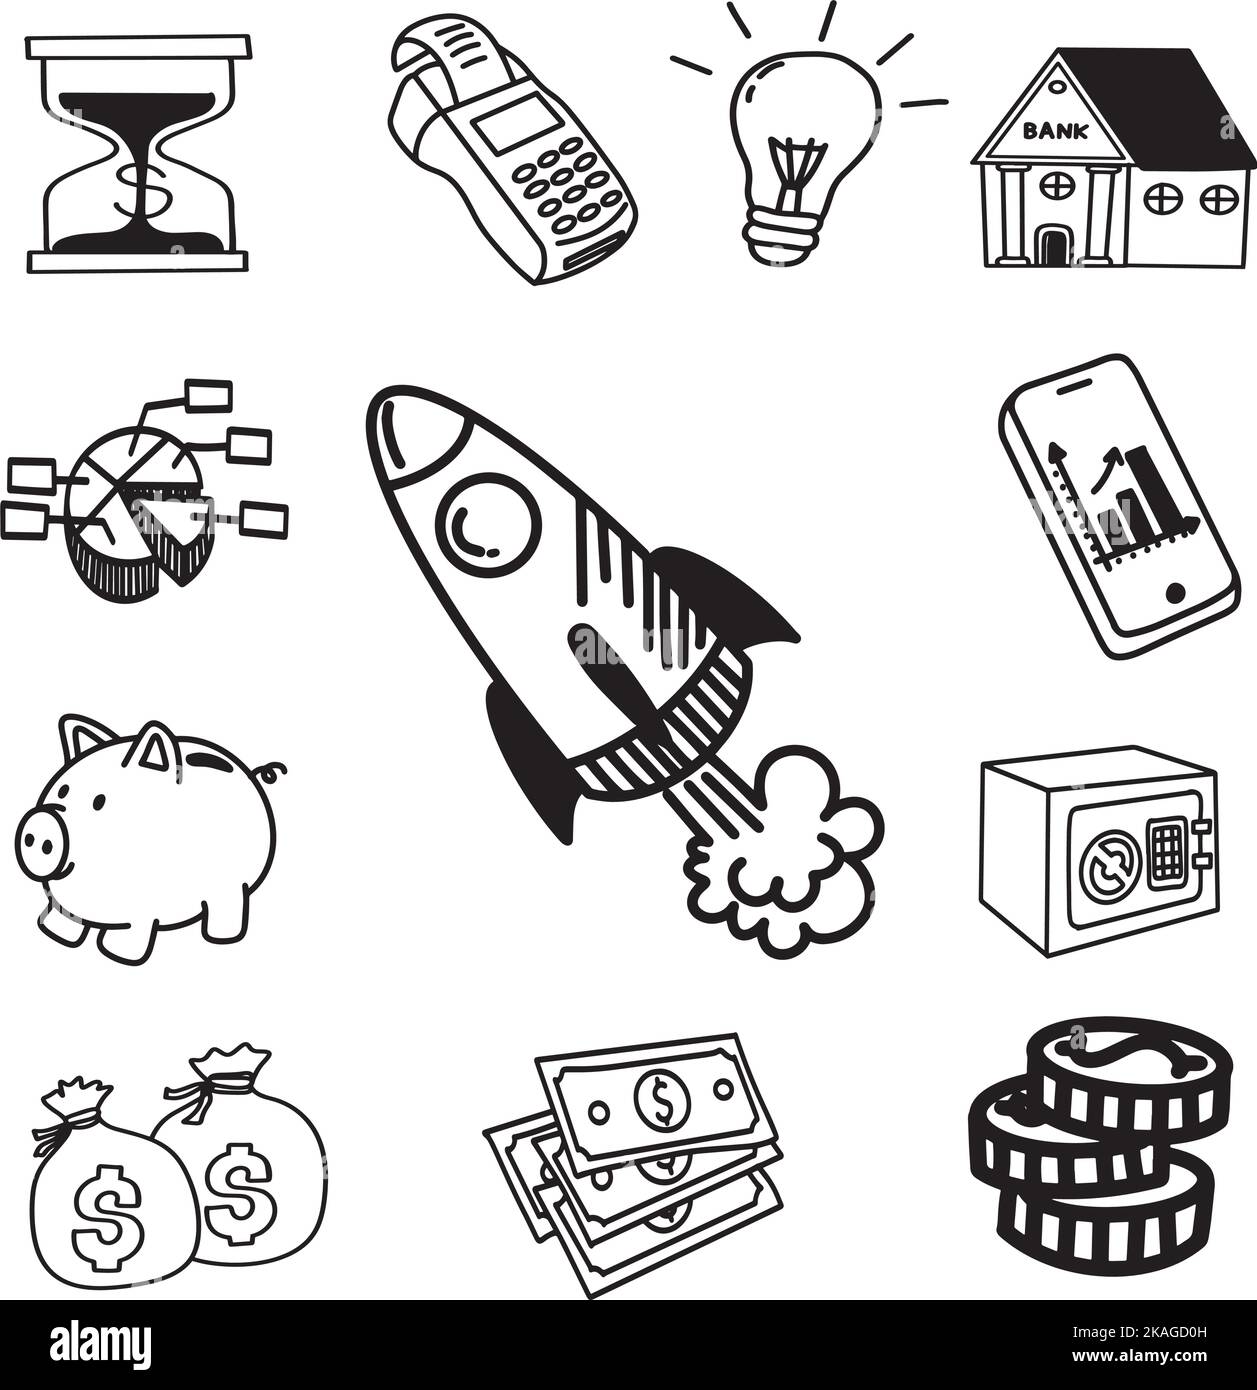 Ideas de negocio lanzamiento del cohete, doodle frehand que dibuja el negocio de la bombilla garabatos sistema Ilustración del Vector